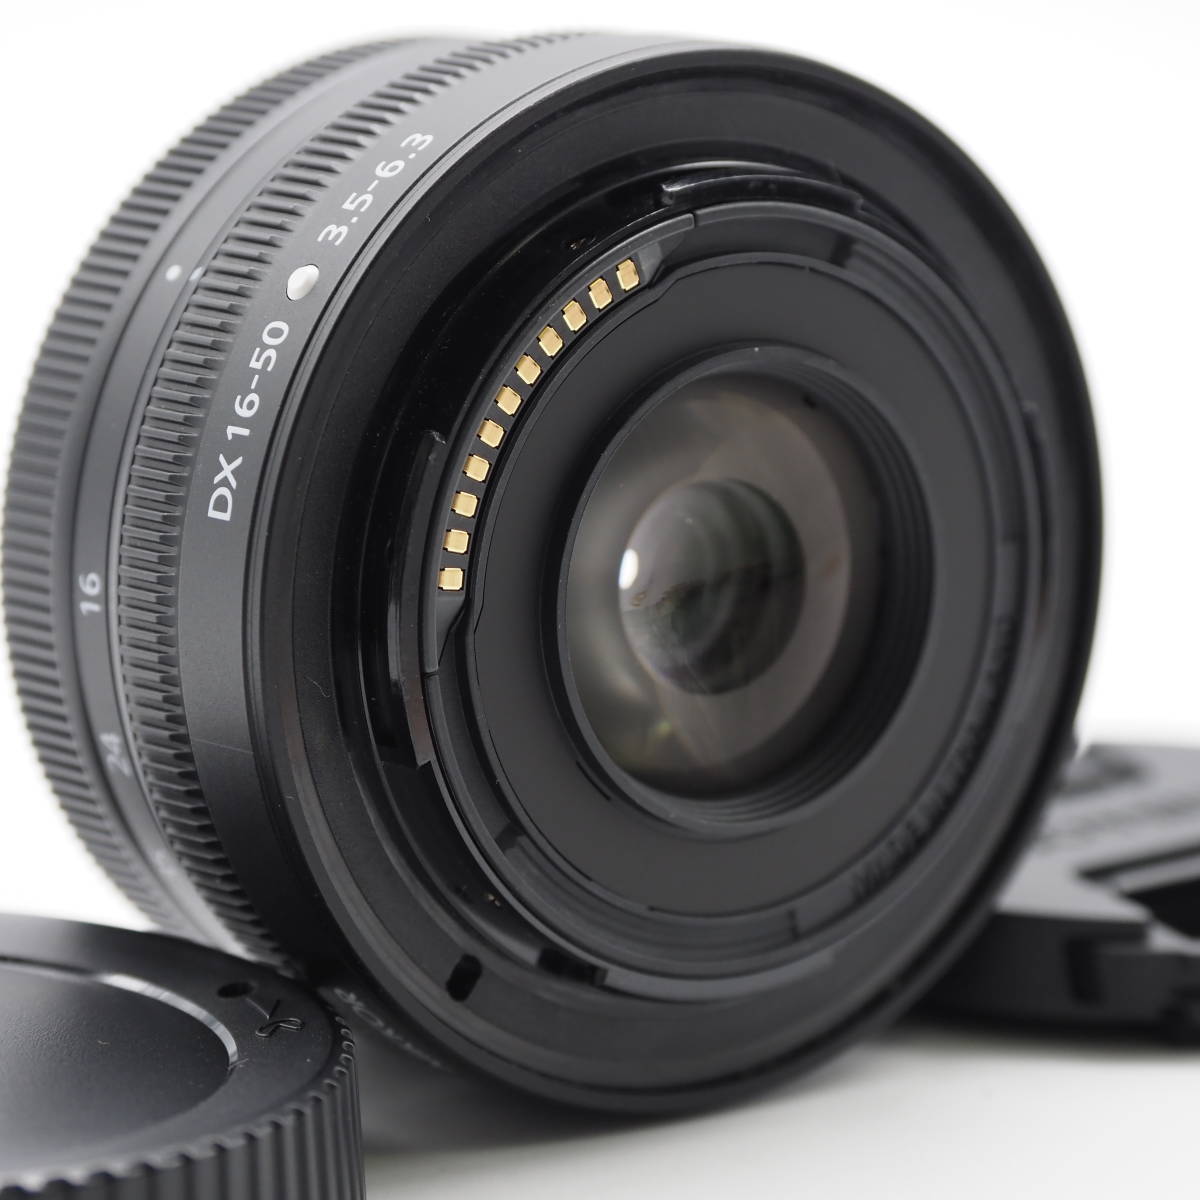  Nikon ニコン 標準ズームレンズ NIKKOR Z DX 16-50mm f/3.5-6.3 VR Zマウント DXレンズ NZDXVR16-50 ブラック #2609_画像4